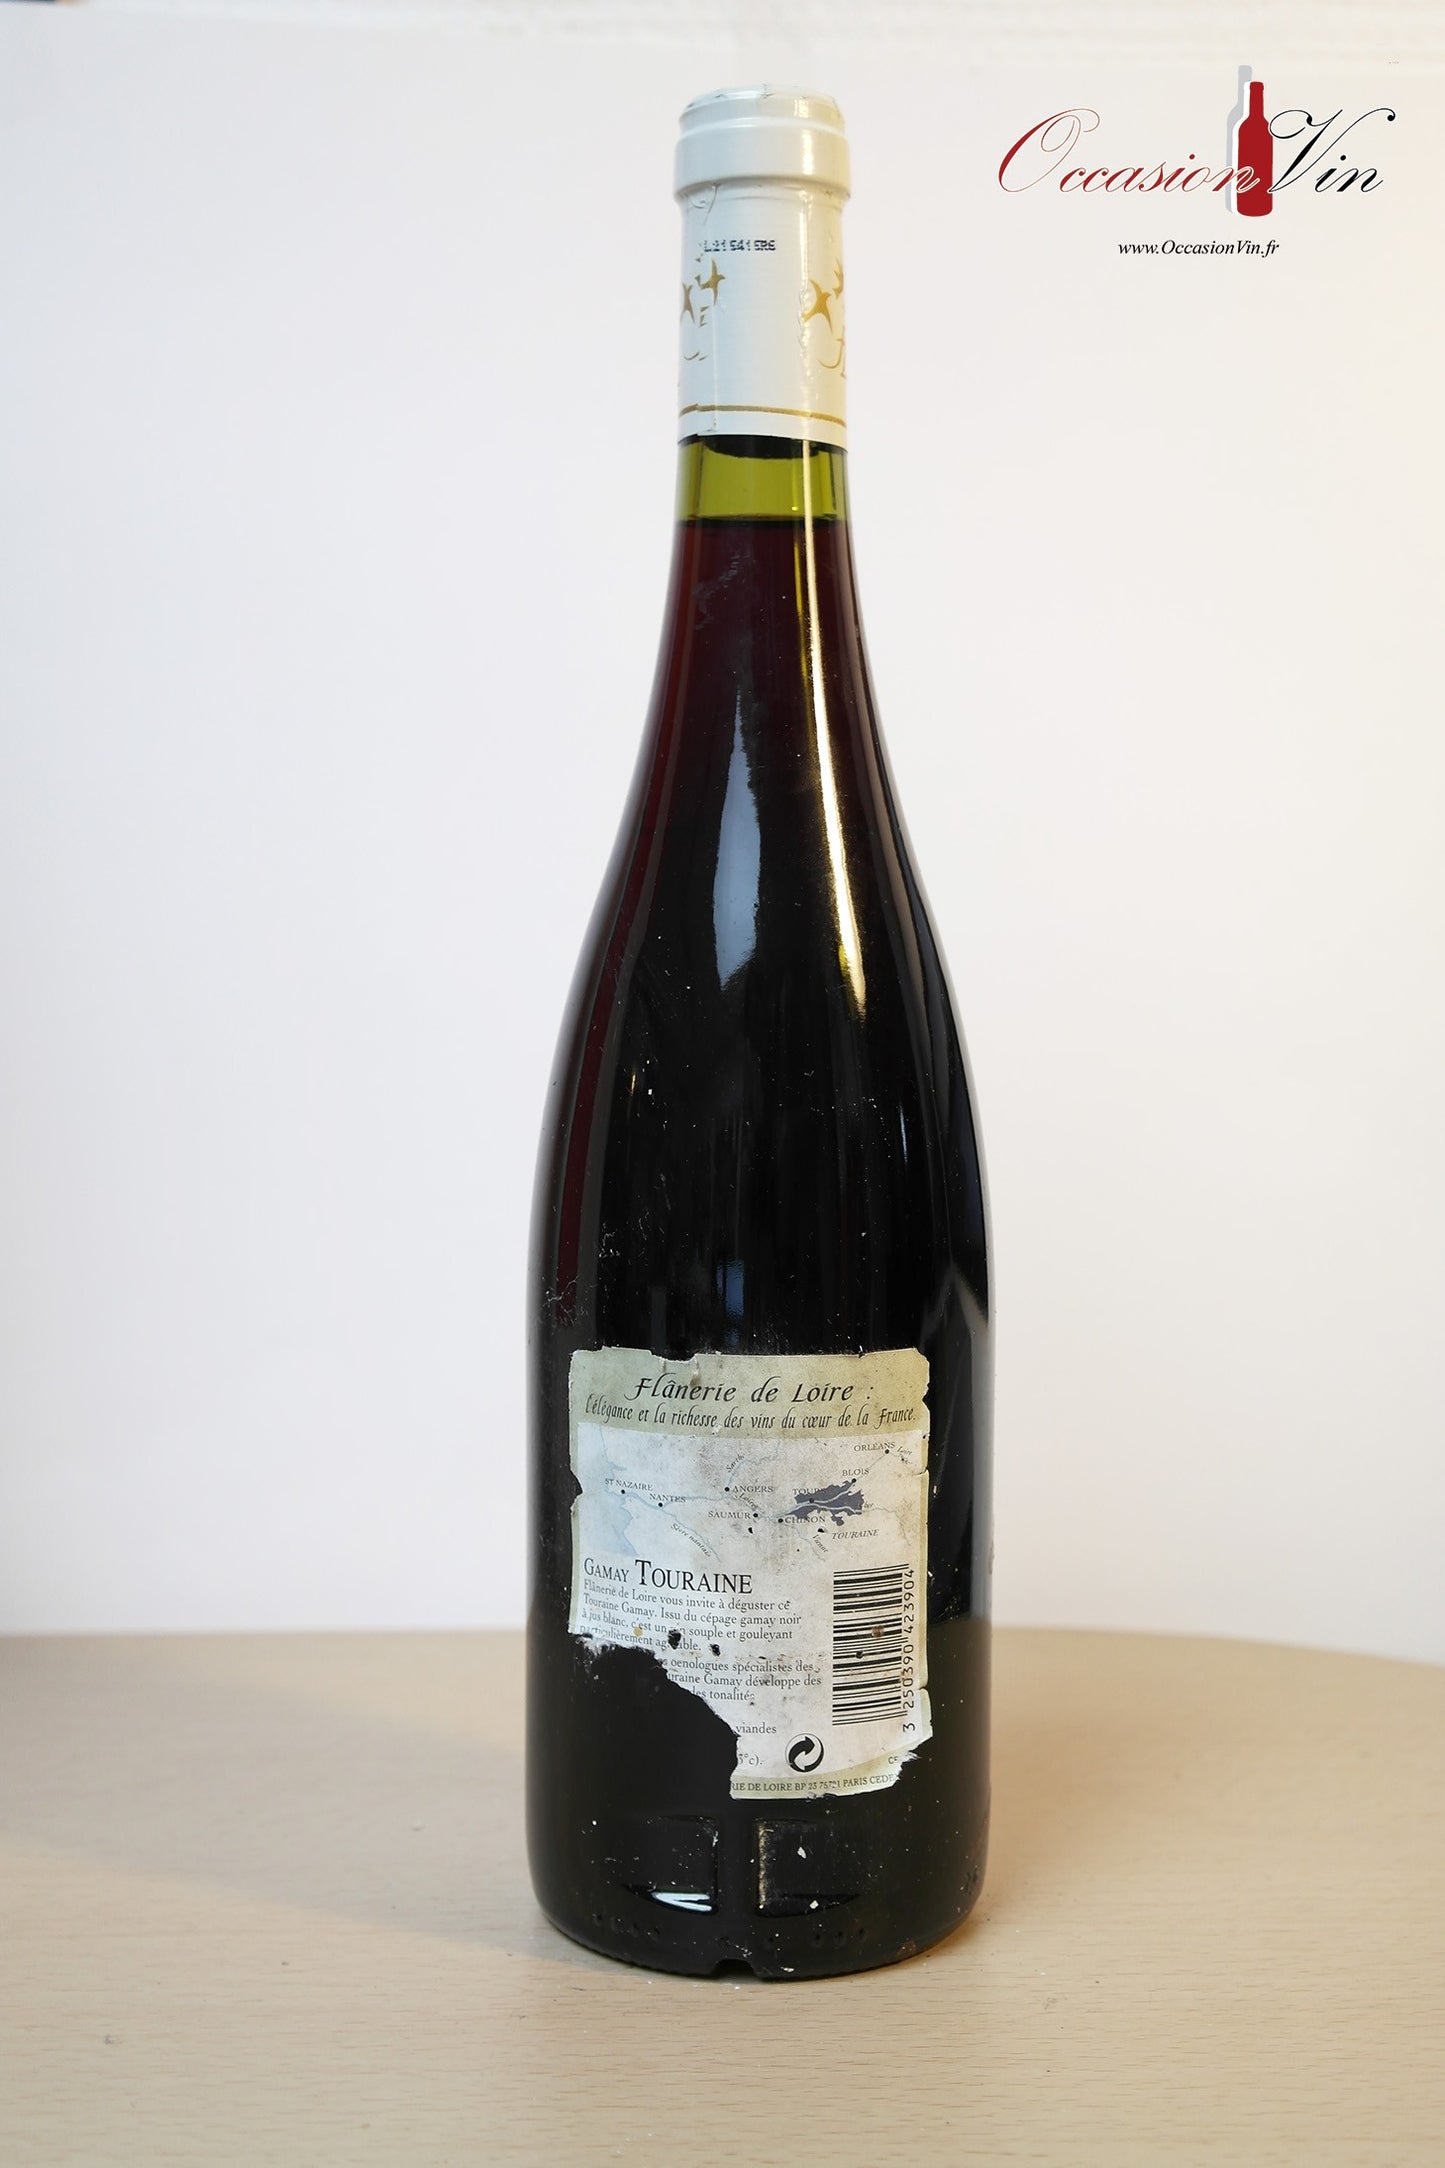 Flânerie de Loire Vin 2001